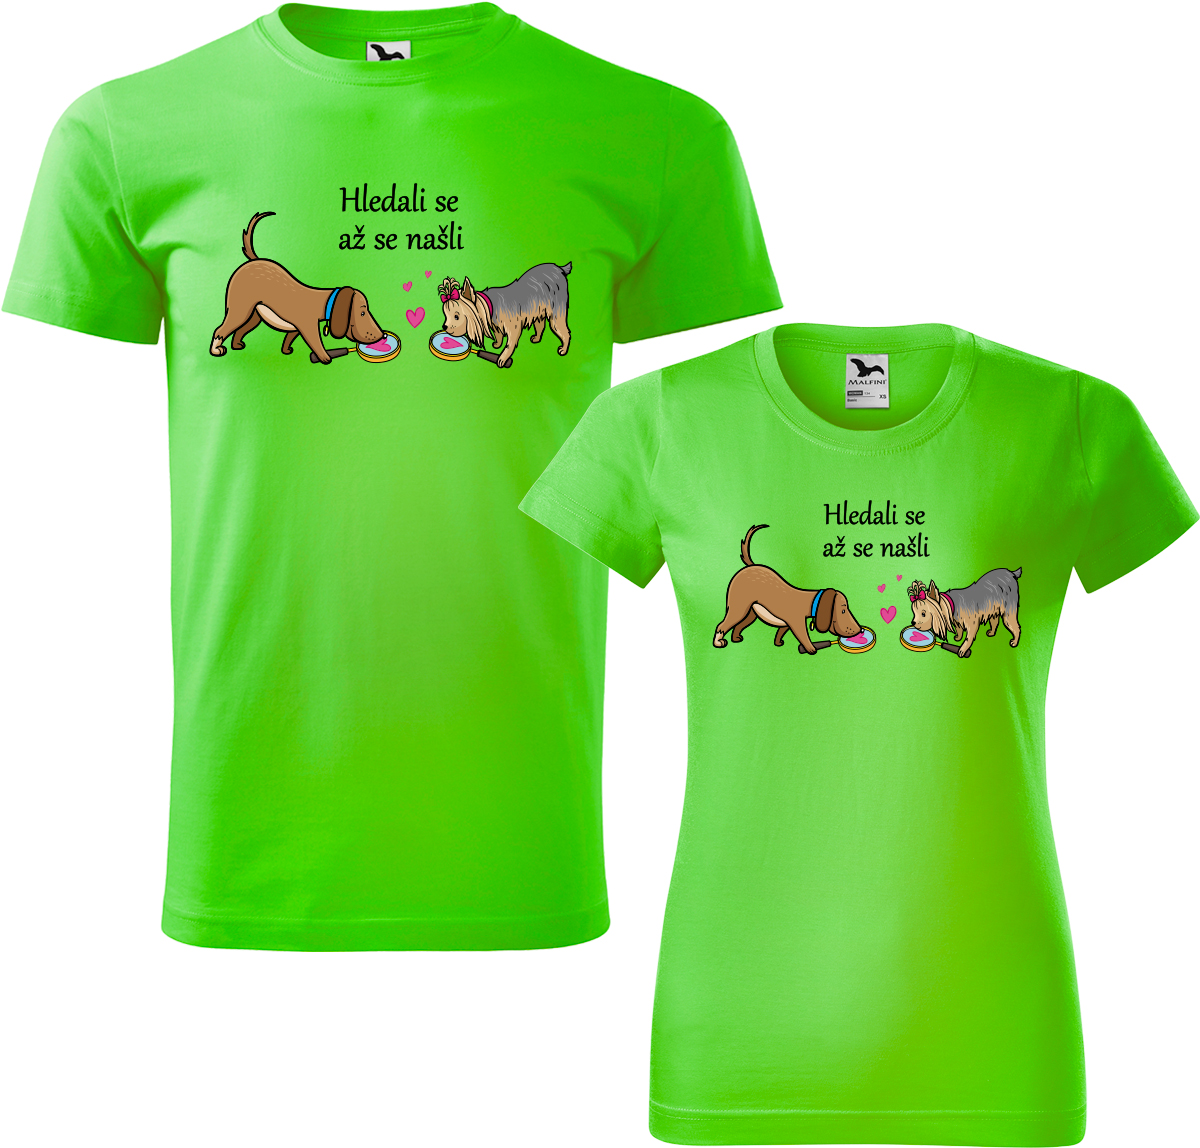 Trička pro páry - Hledali se až se našli Barva: Apple Green (92), Velikost dámské tričko: 2XL, Velikost pánské tričko: 2XL